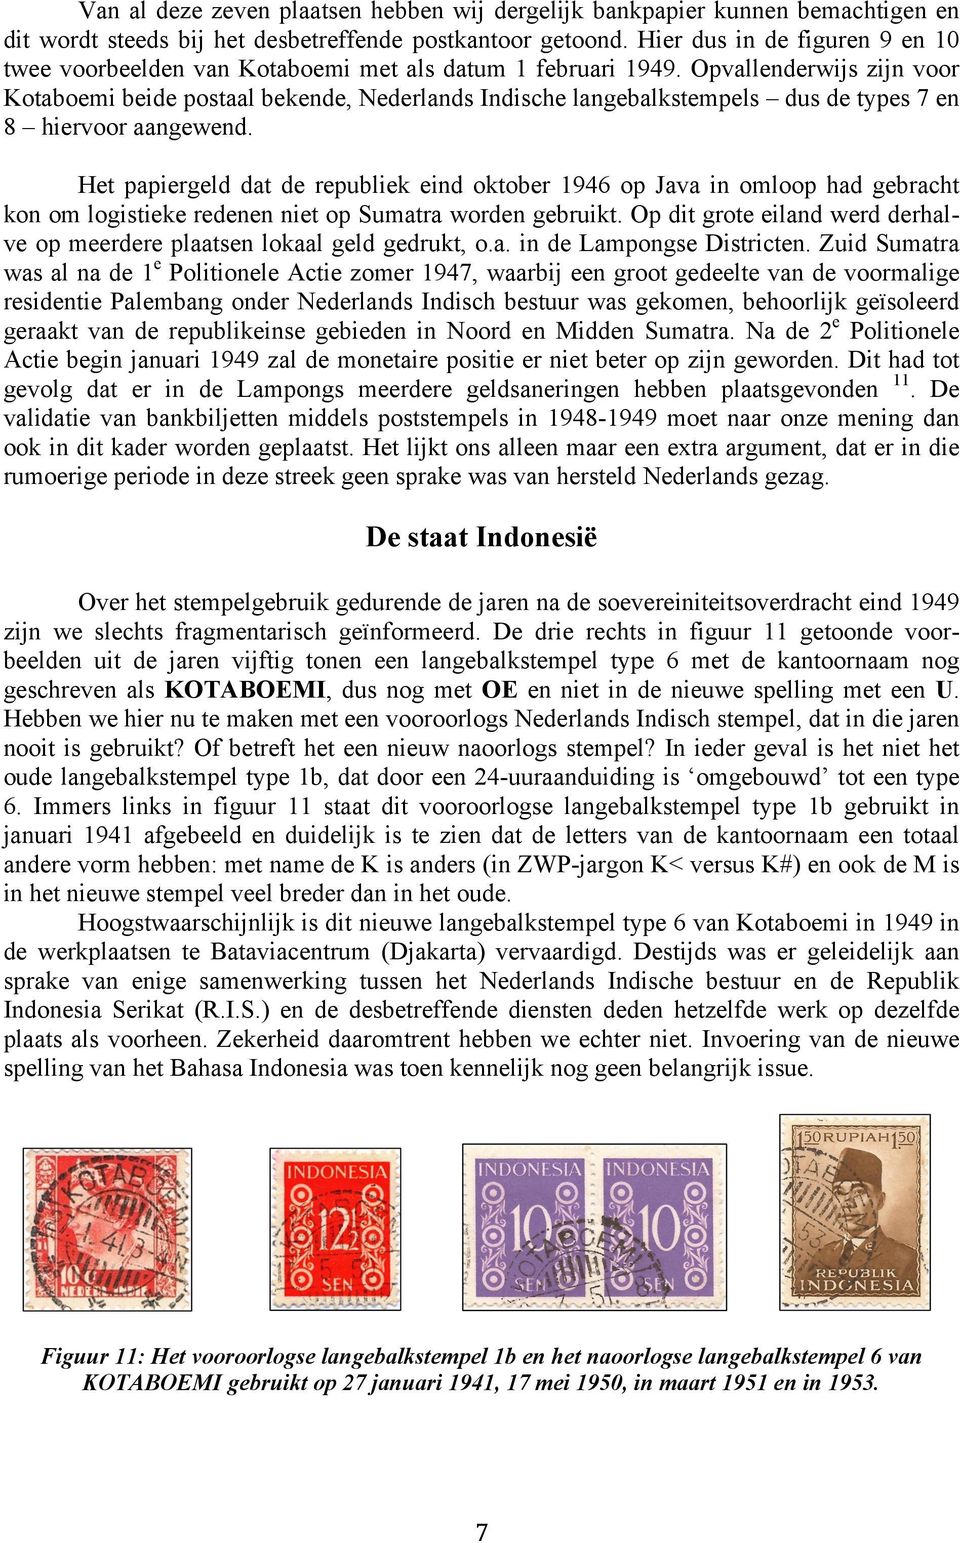 Opvallenderwijs zijn voor Kotaboemi beide postaal bekende, Nederlands Indische langebalkstempels dus de types 7 en 8 hiervoor aangewend.